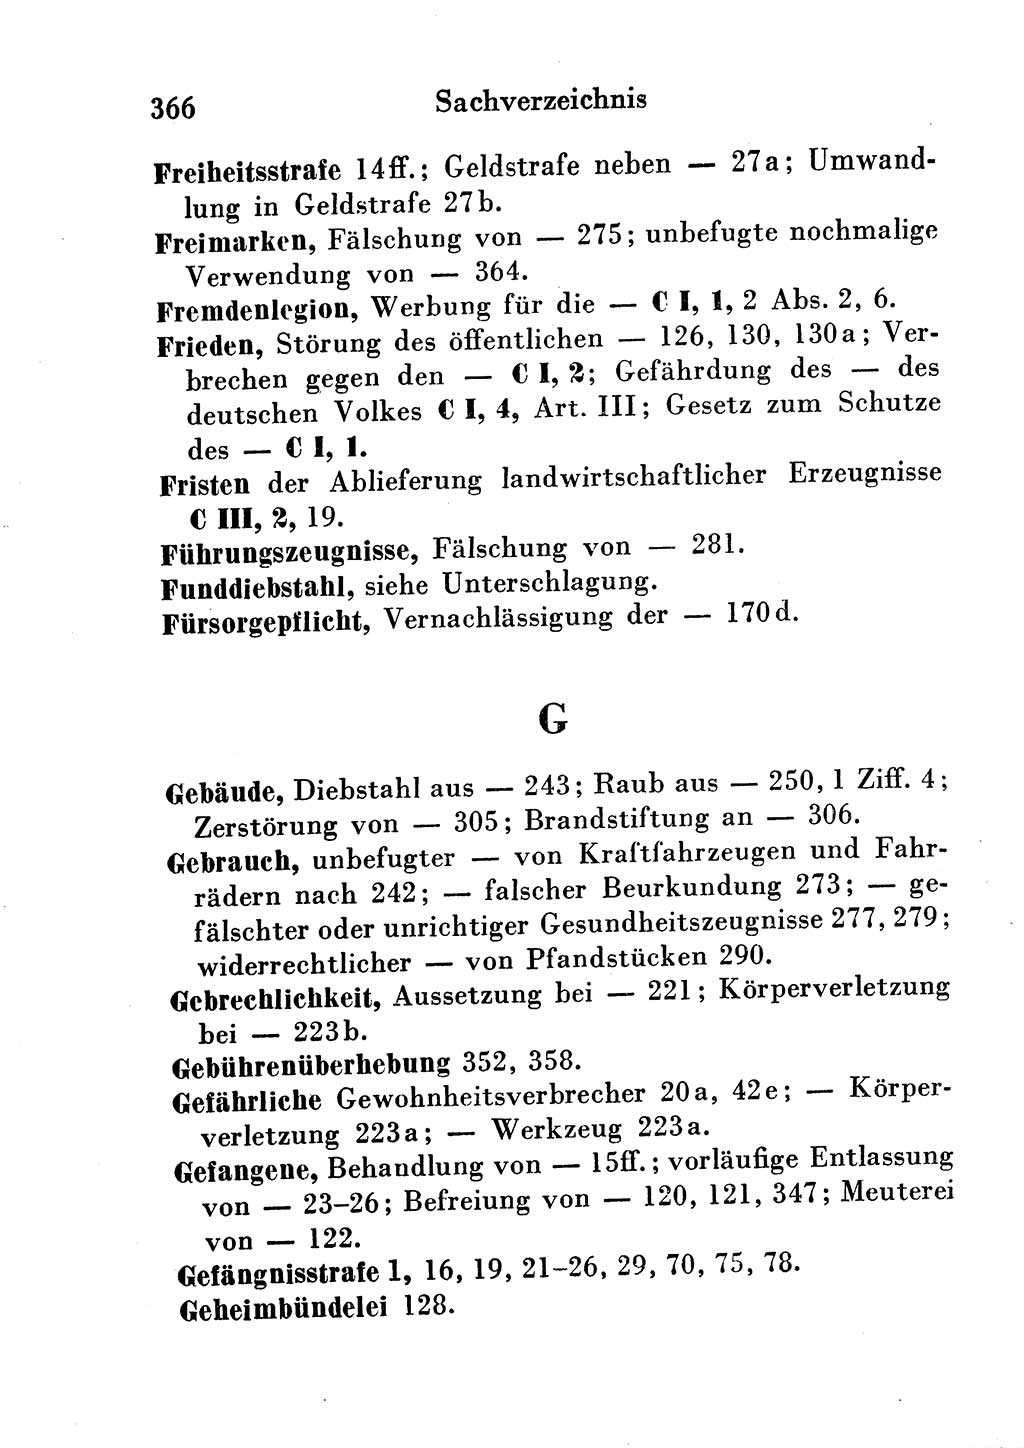 Strafgesetzbuch (StGB) und andere Strafgesetze [Deutsche Demokratische Republik (DDR)] 1954, Seite 366 (StGB Strafges. DDR 1954, S. 366)